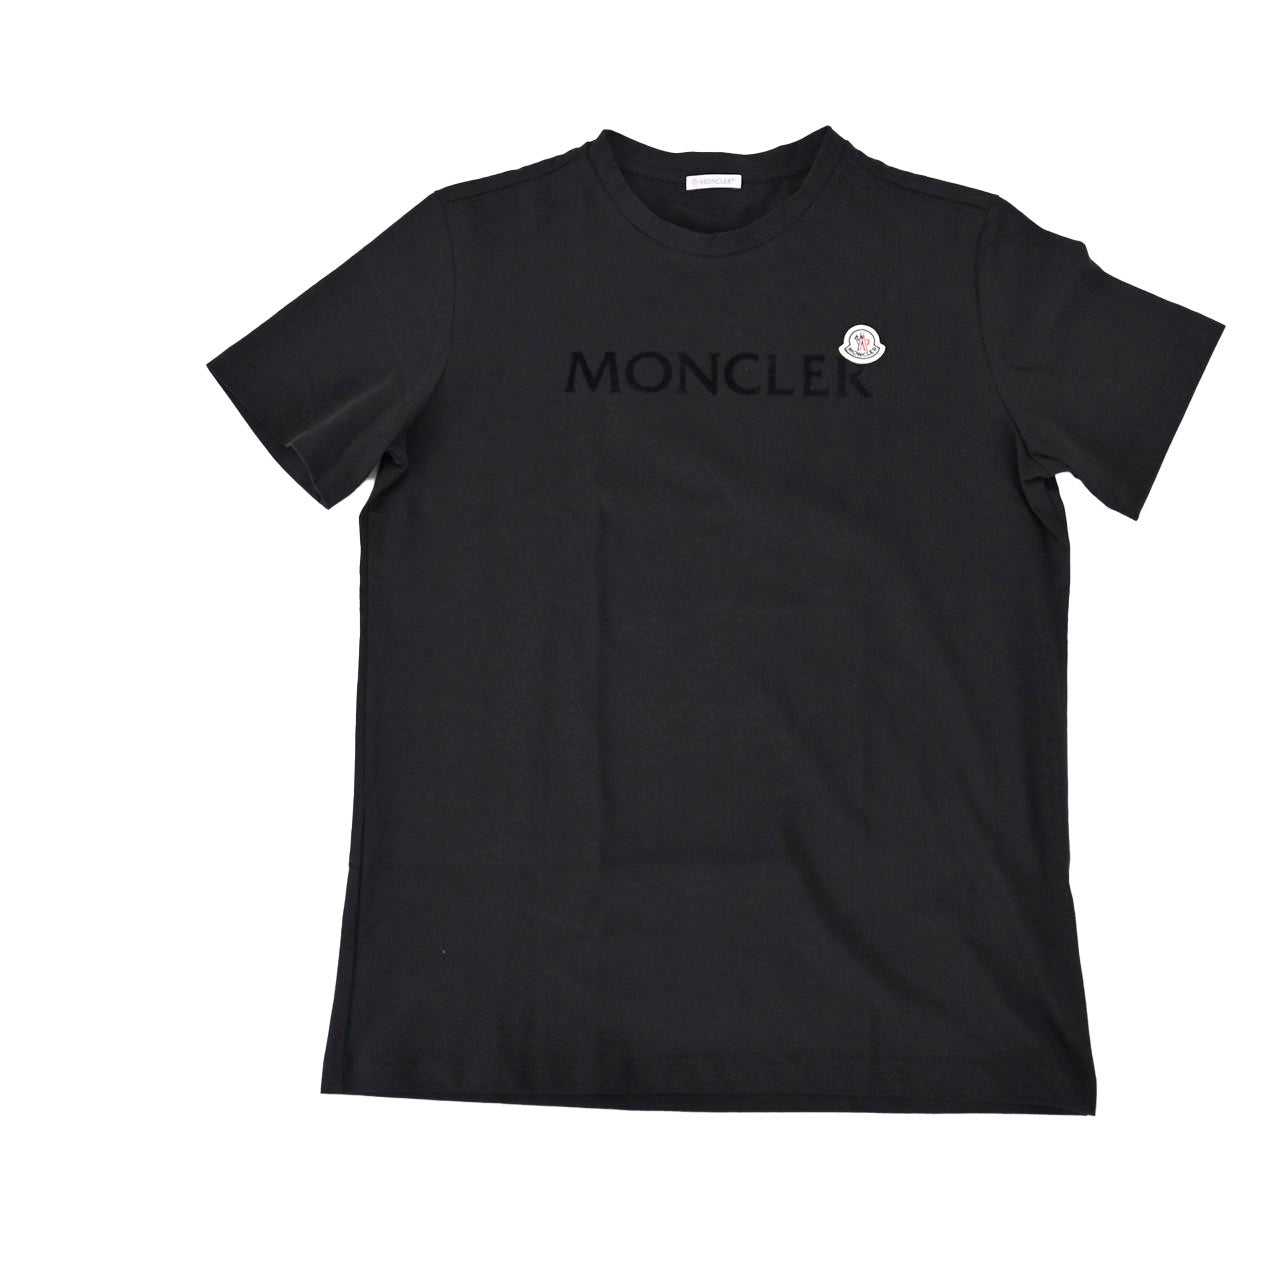 ★モンクレール MONCLER Tシャツ 8C000 22 8390T 999 ブラック 年秋冬 メンズ